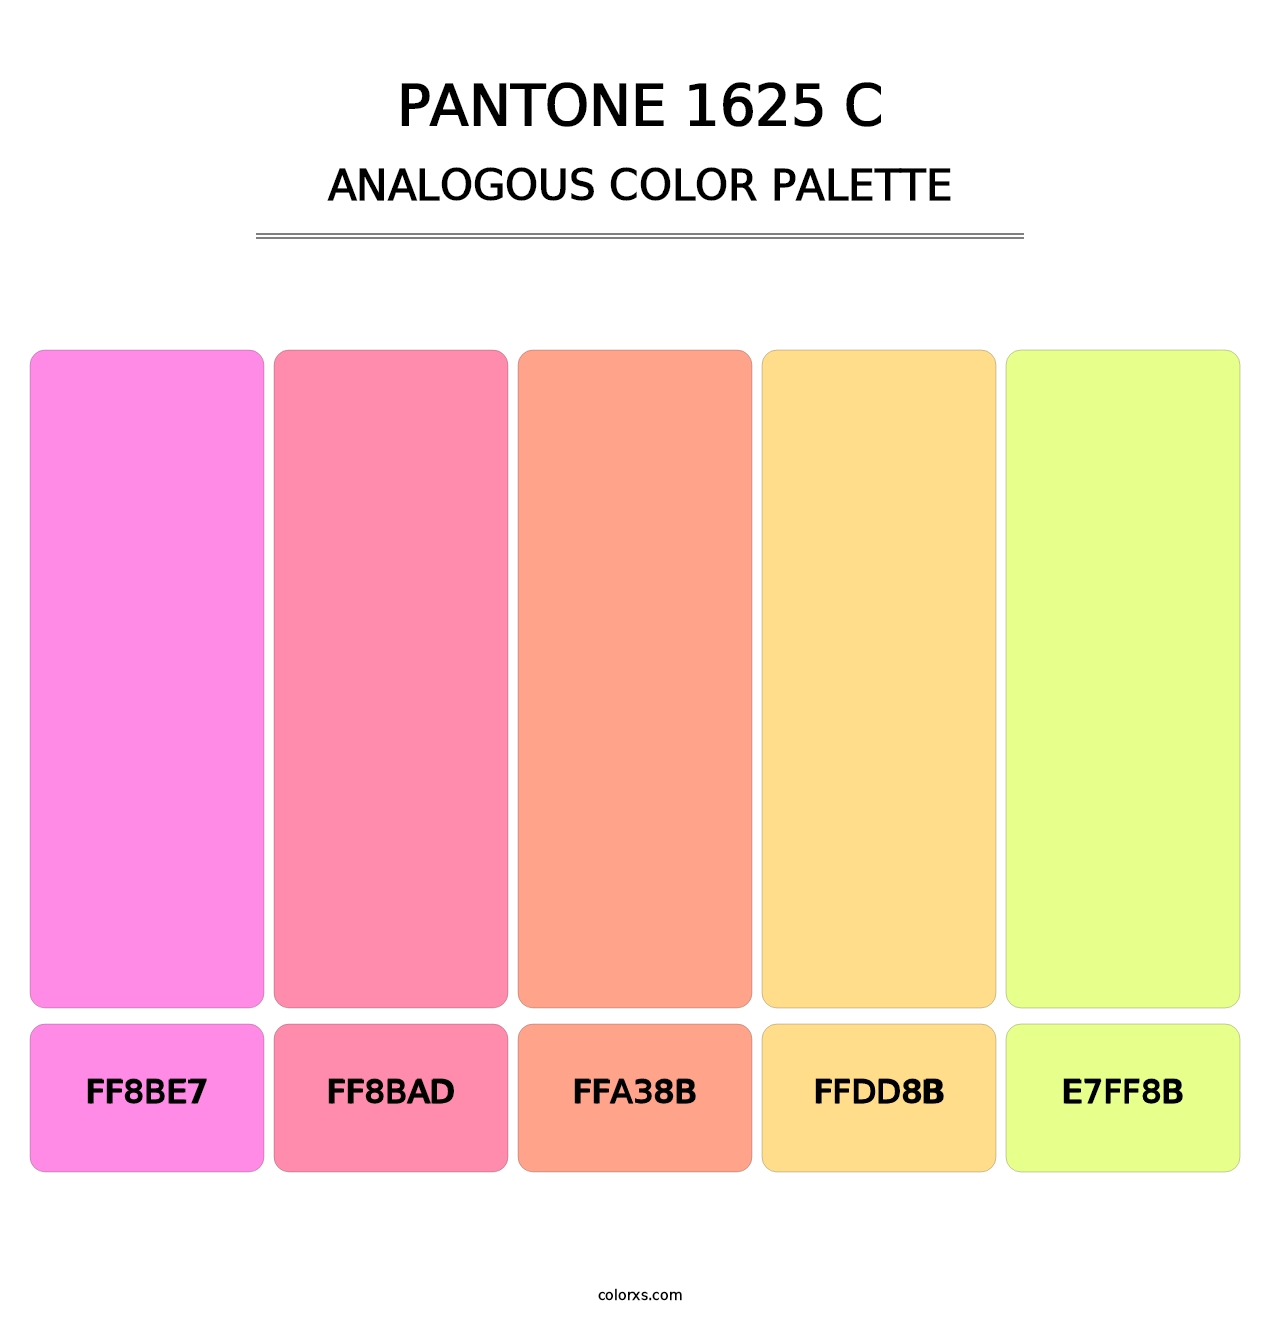 PANTONE 1625 C - Analogous Color Palette